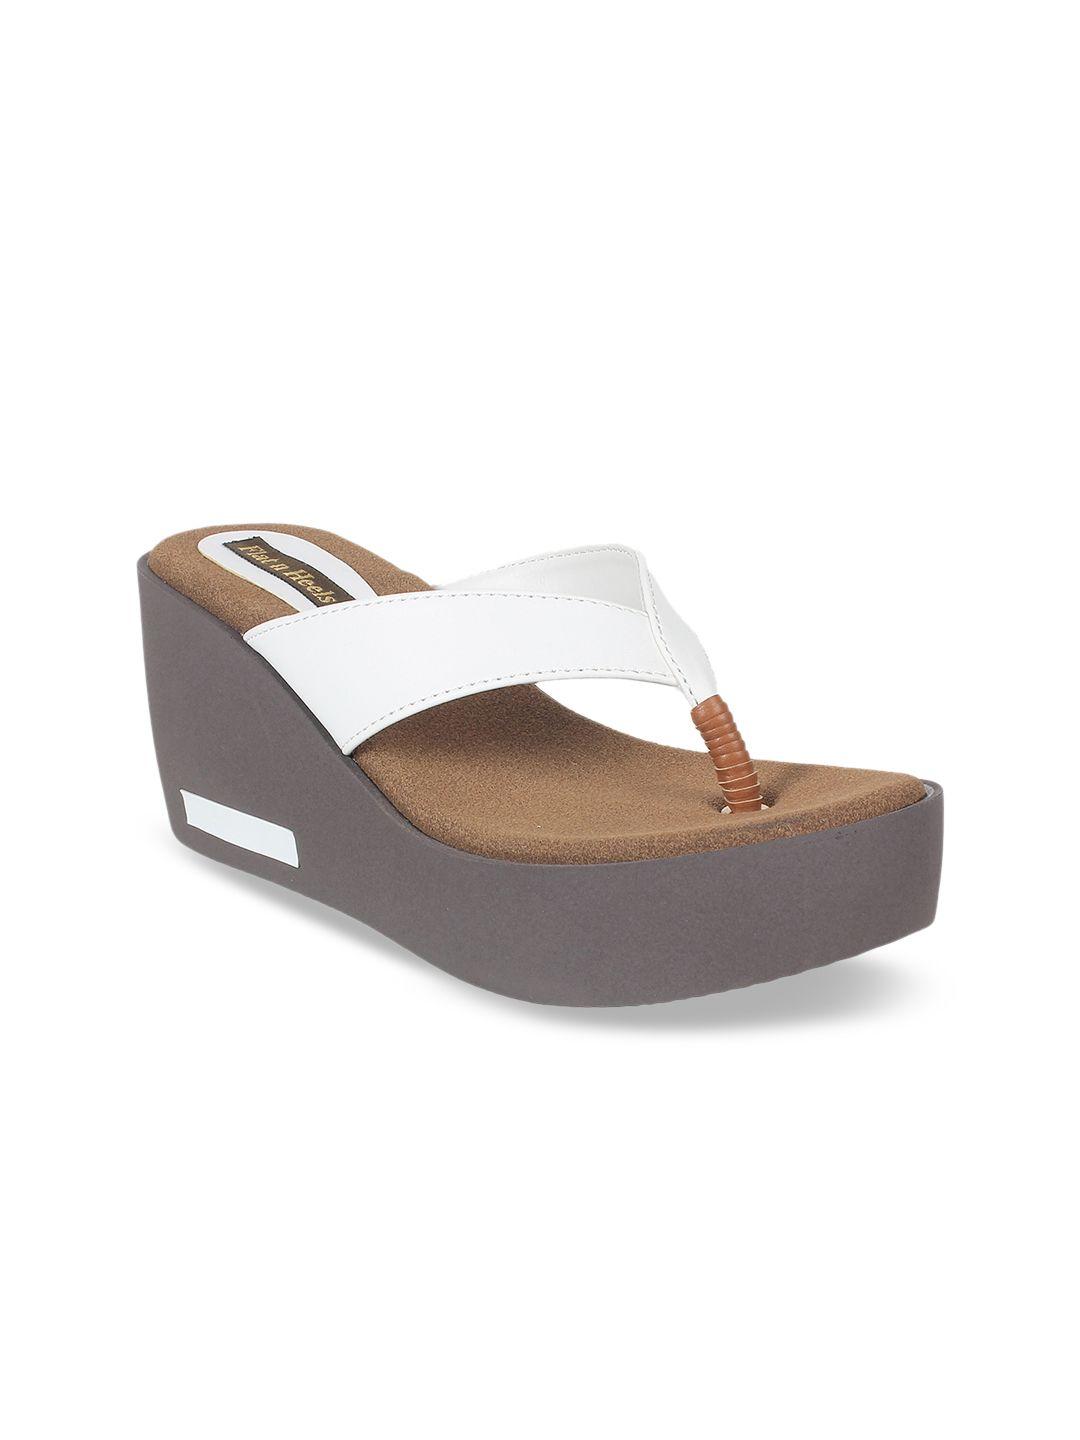 flat-n-heels-women-white-solid-wedge-heels